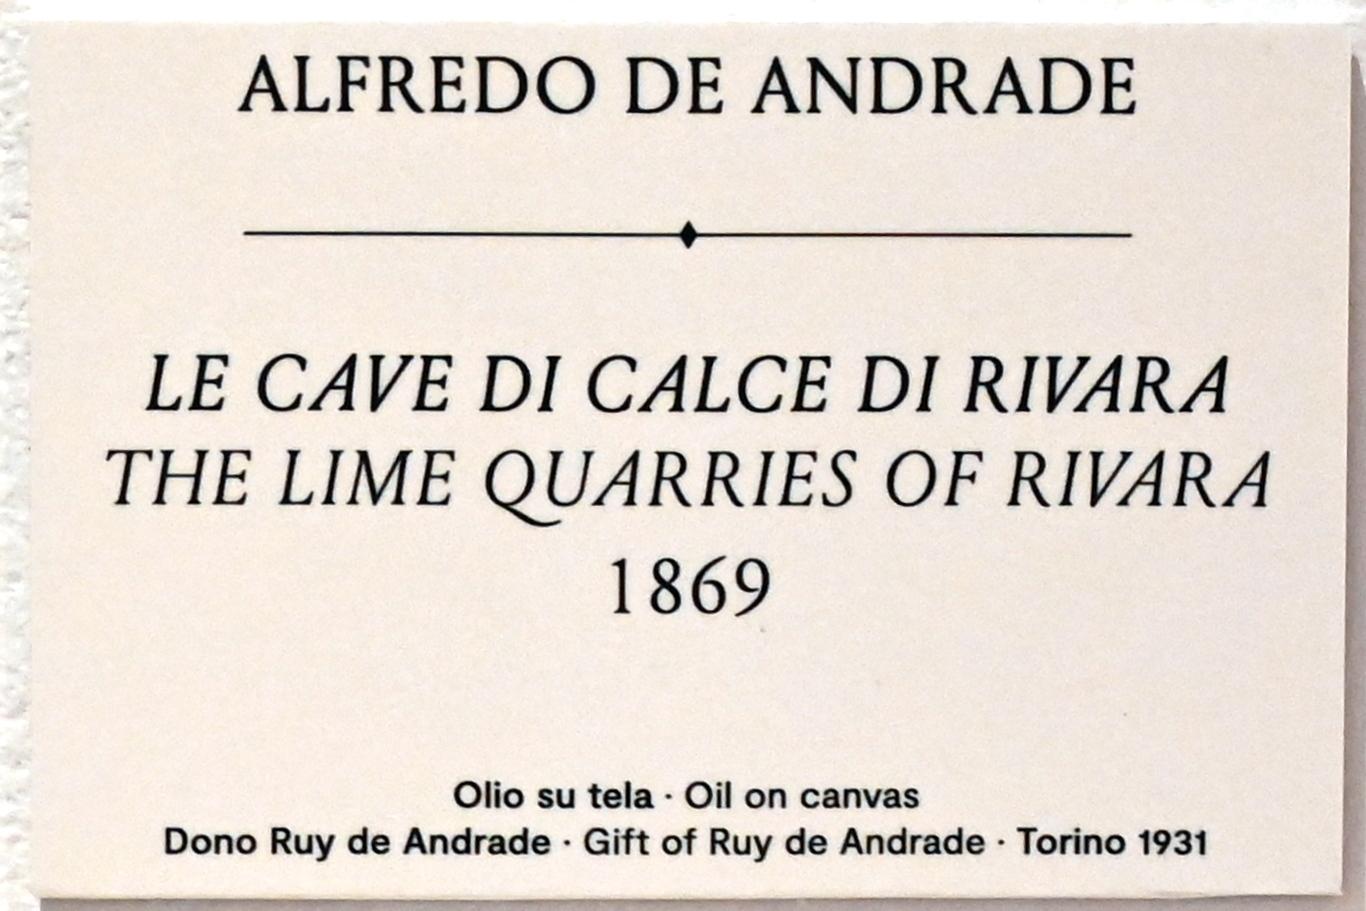 Alfredo d’Andrade (1867–1871), Die Kalksteinbrüche von Rivara, Turin, GAM Torino, Ausstellung "Natur und Wahrheit" vom 09.07.-17.10.2021, 1869, Bild 2/3